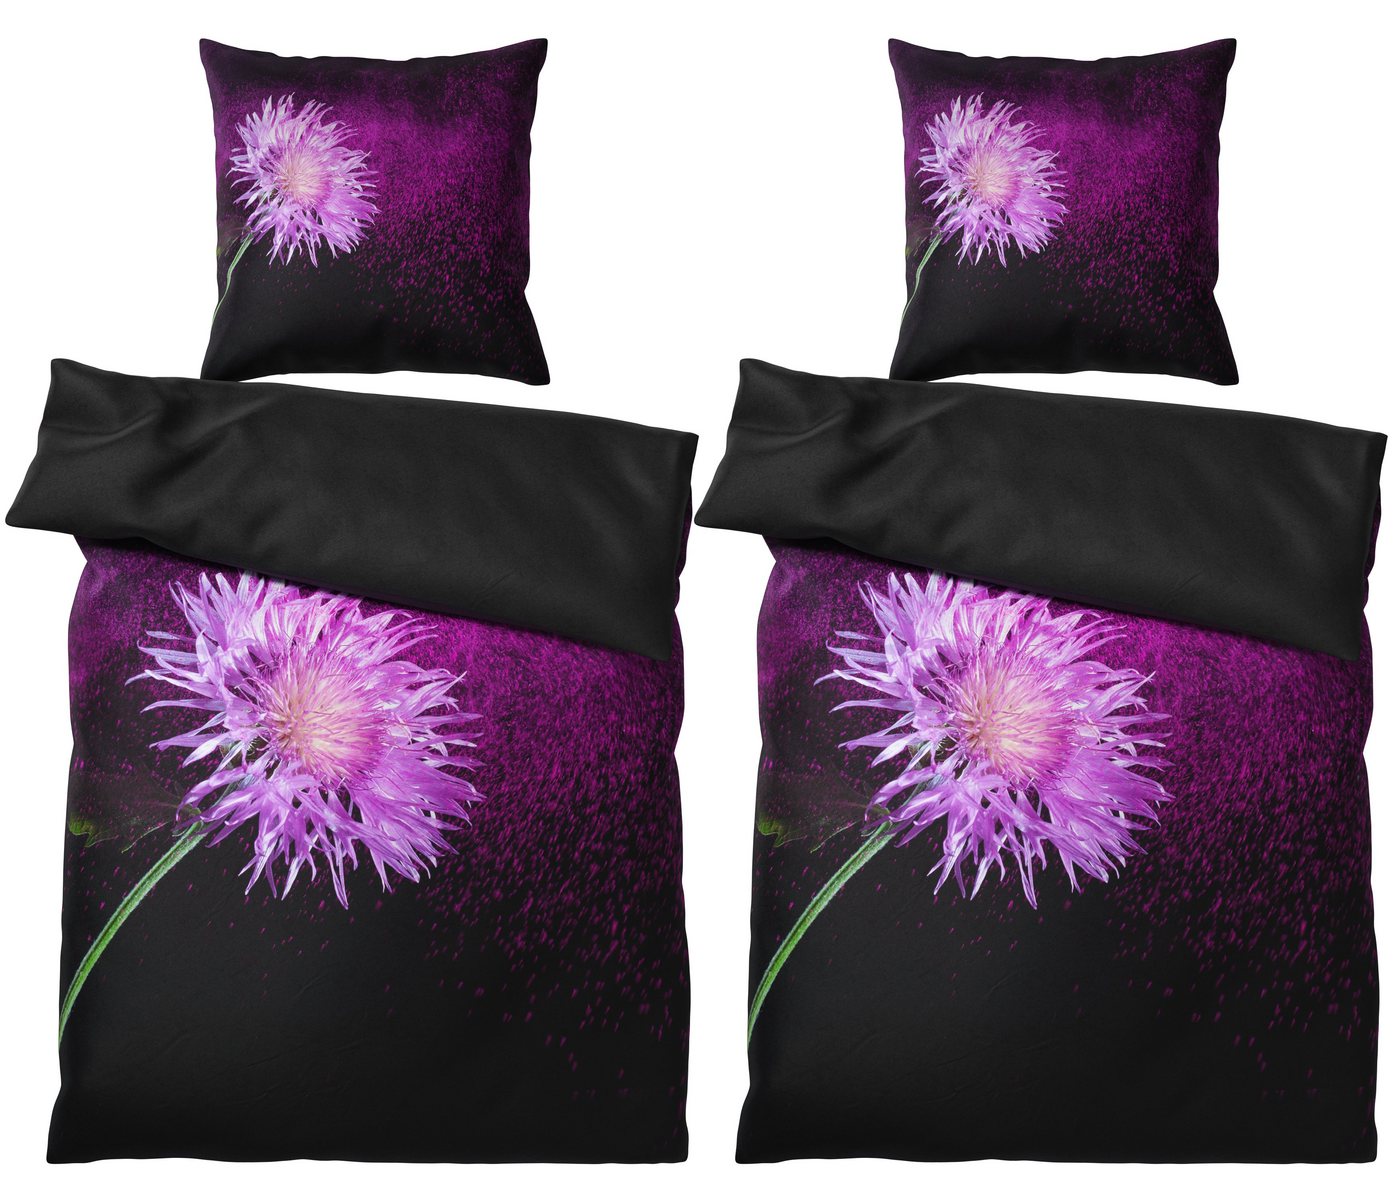 Bettwäsche Purple Dust 135x200 cm, Bettbezug und Kissenbezug, Sanilo, Baumwolle, 4 teilig von Sanilo